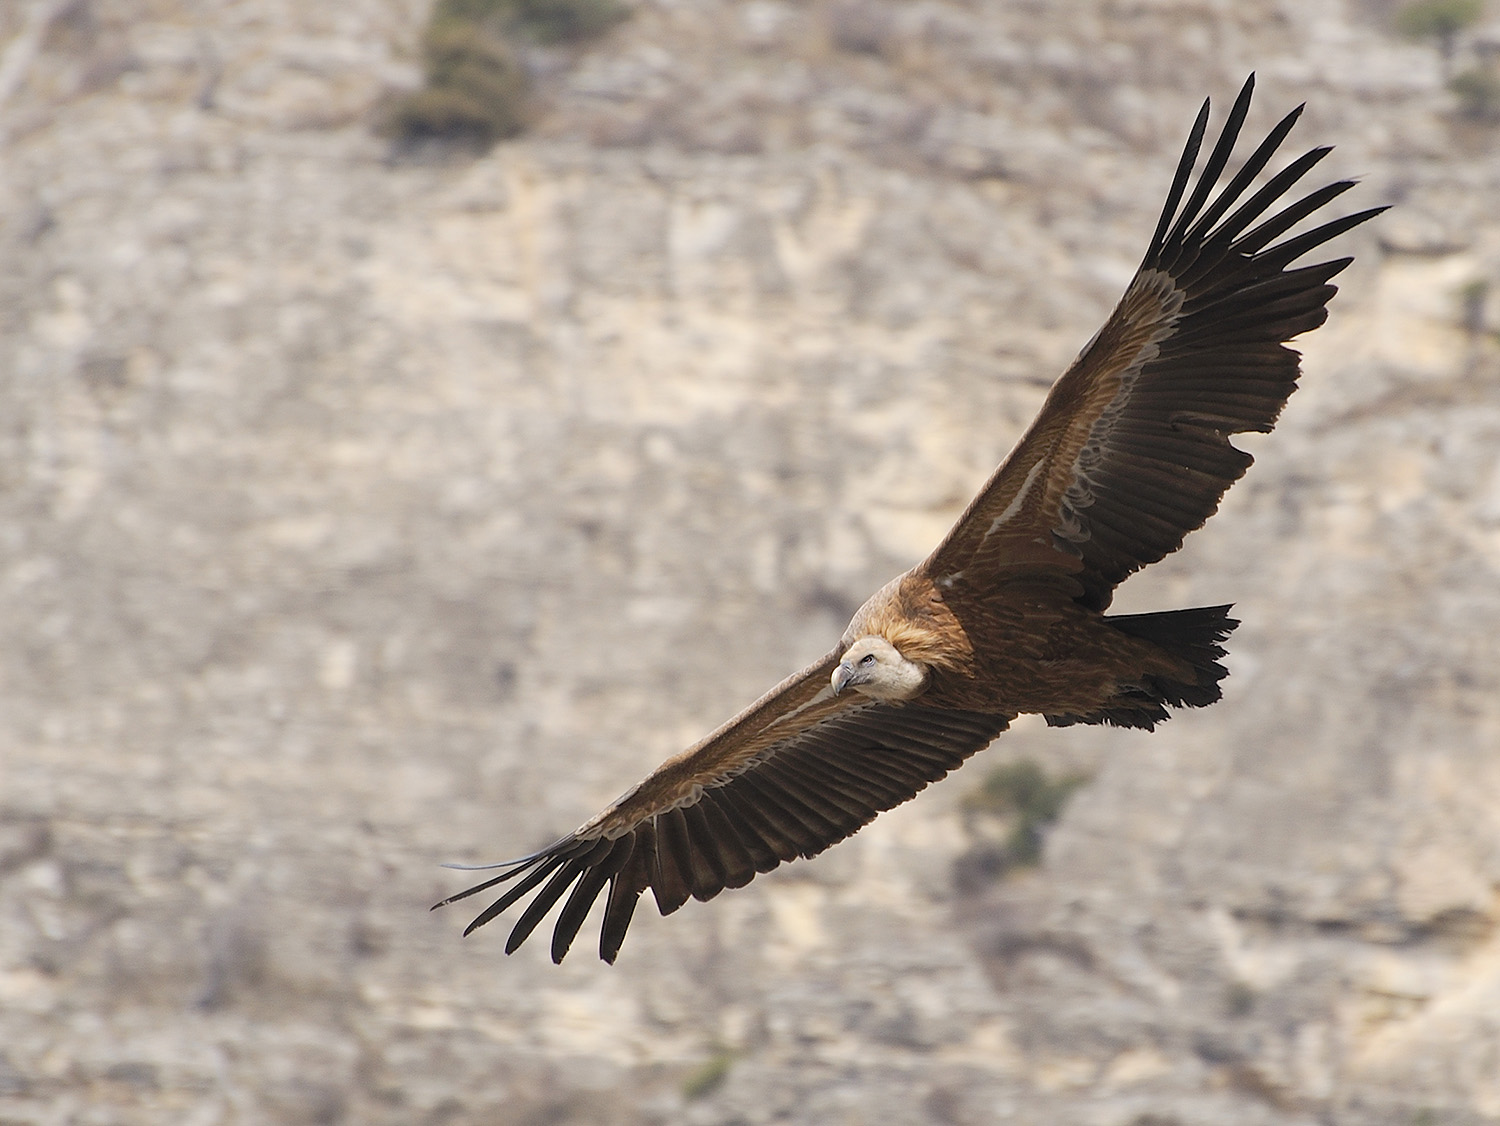 Griffon vulture sa paglupad sa background sa bato